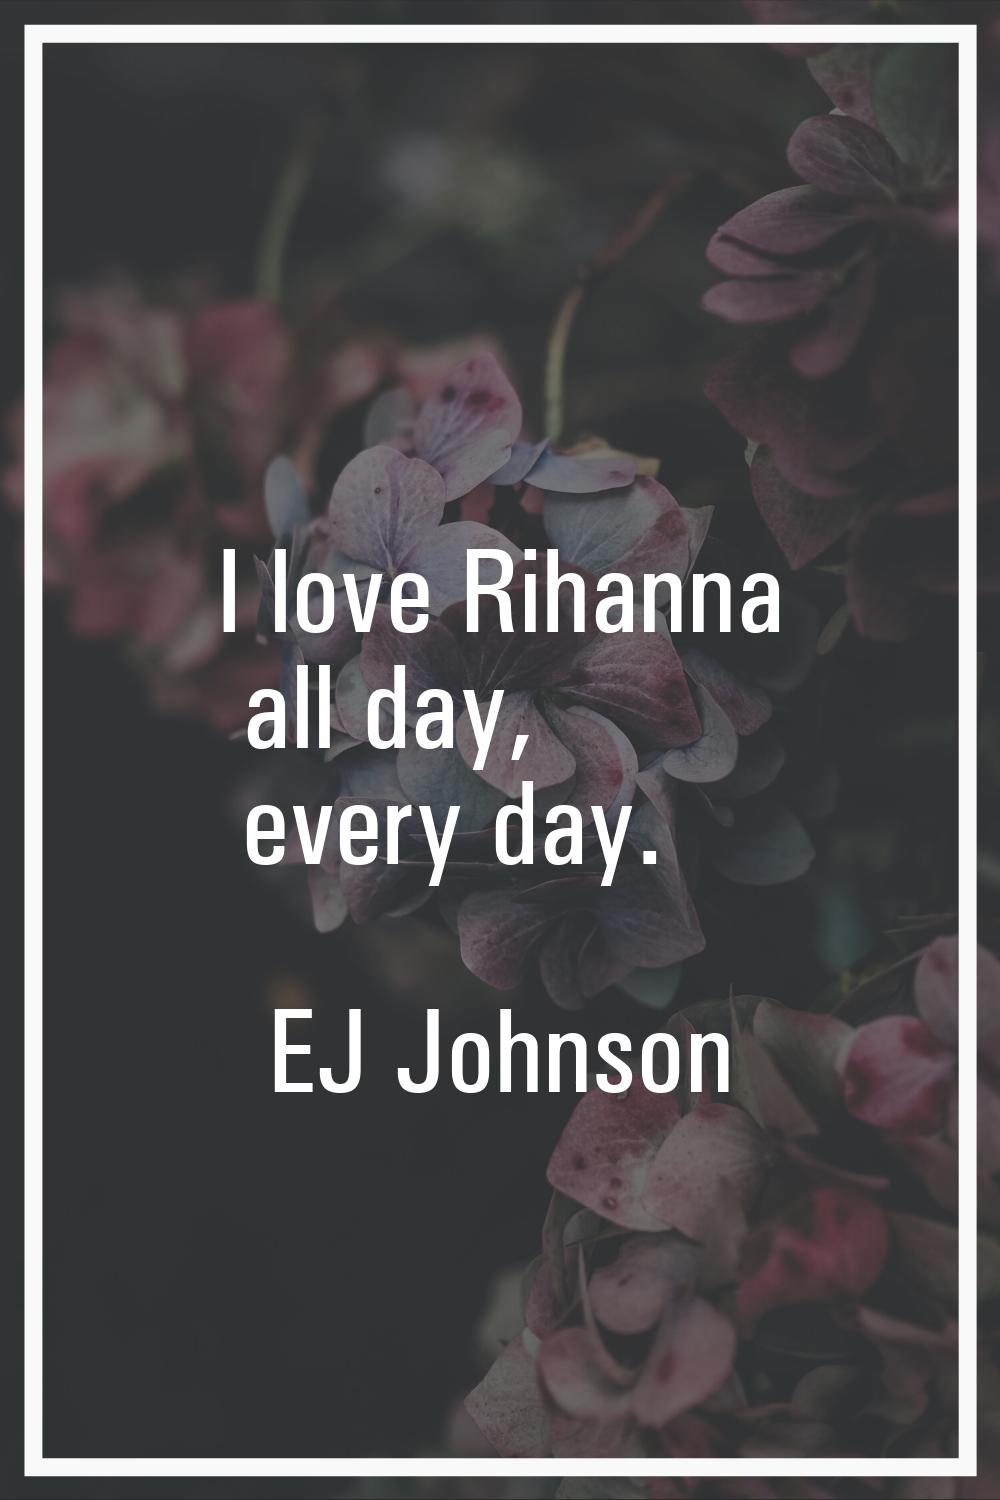 I love Rihanna all day, every day.